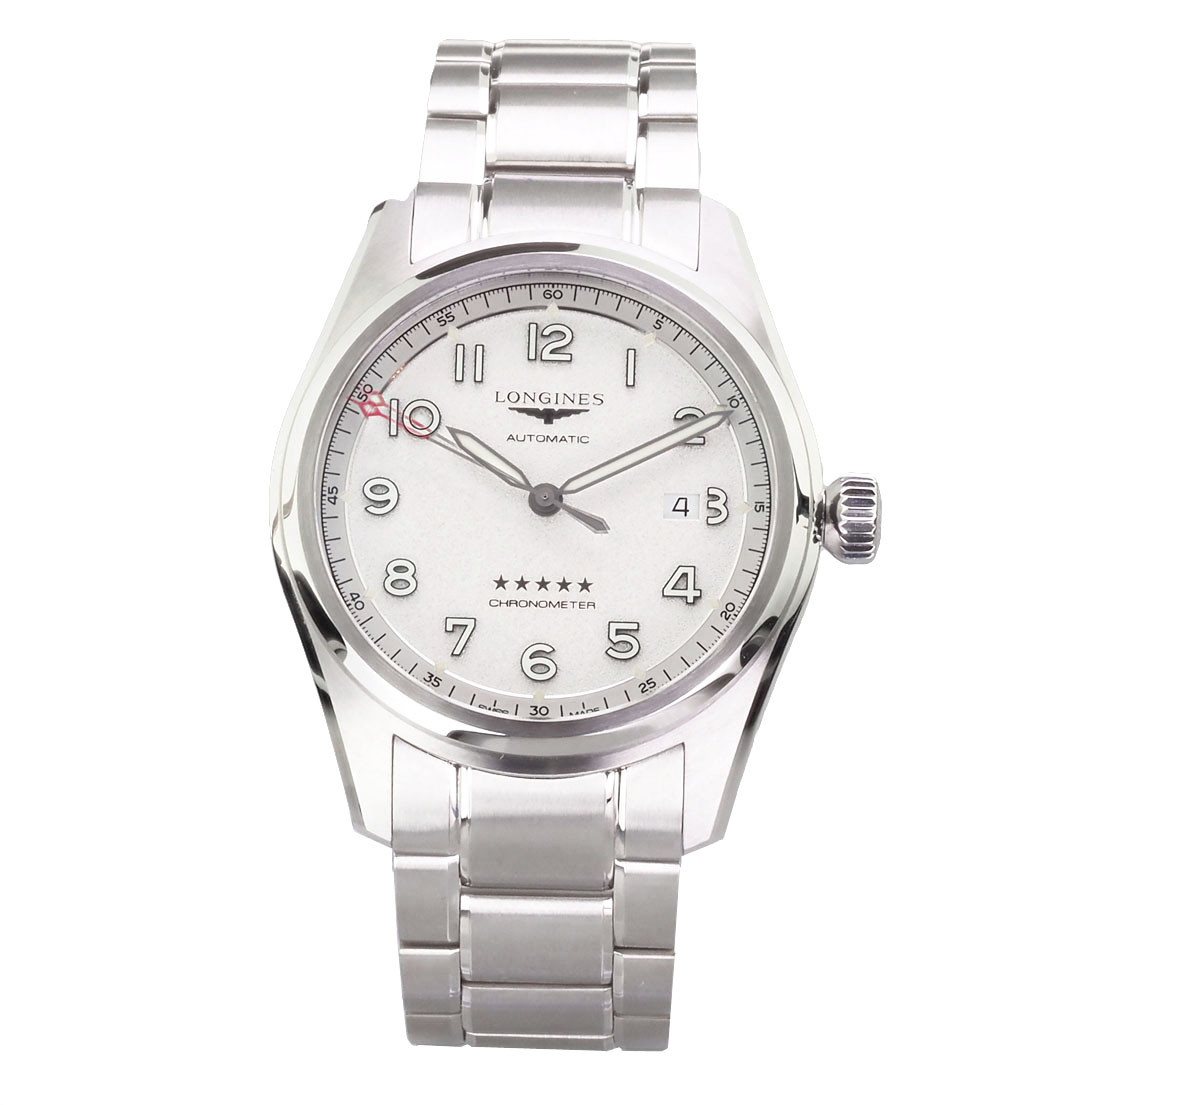 LONGINES Automatikuhr Swiss Made L38104739 Herren Uhr Spirit Prestige Edition Chronometer, Uhrwerk: L888.4 schweizer Mechanisches Uhrwerk mit Automatikaufzug von LONGINES